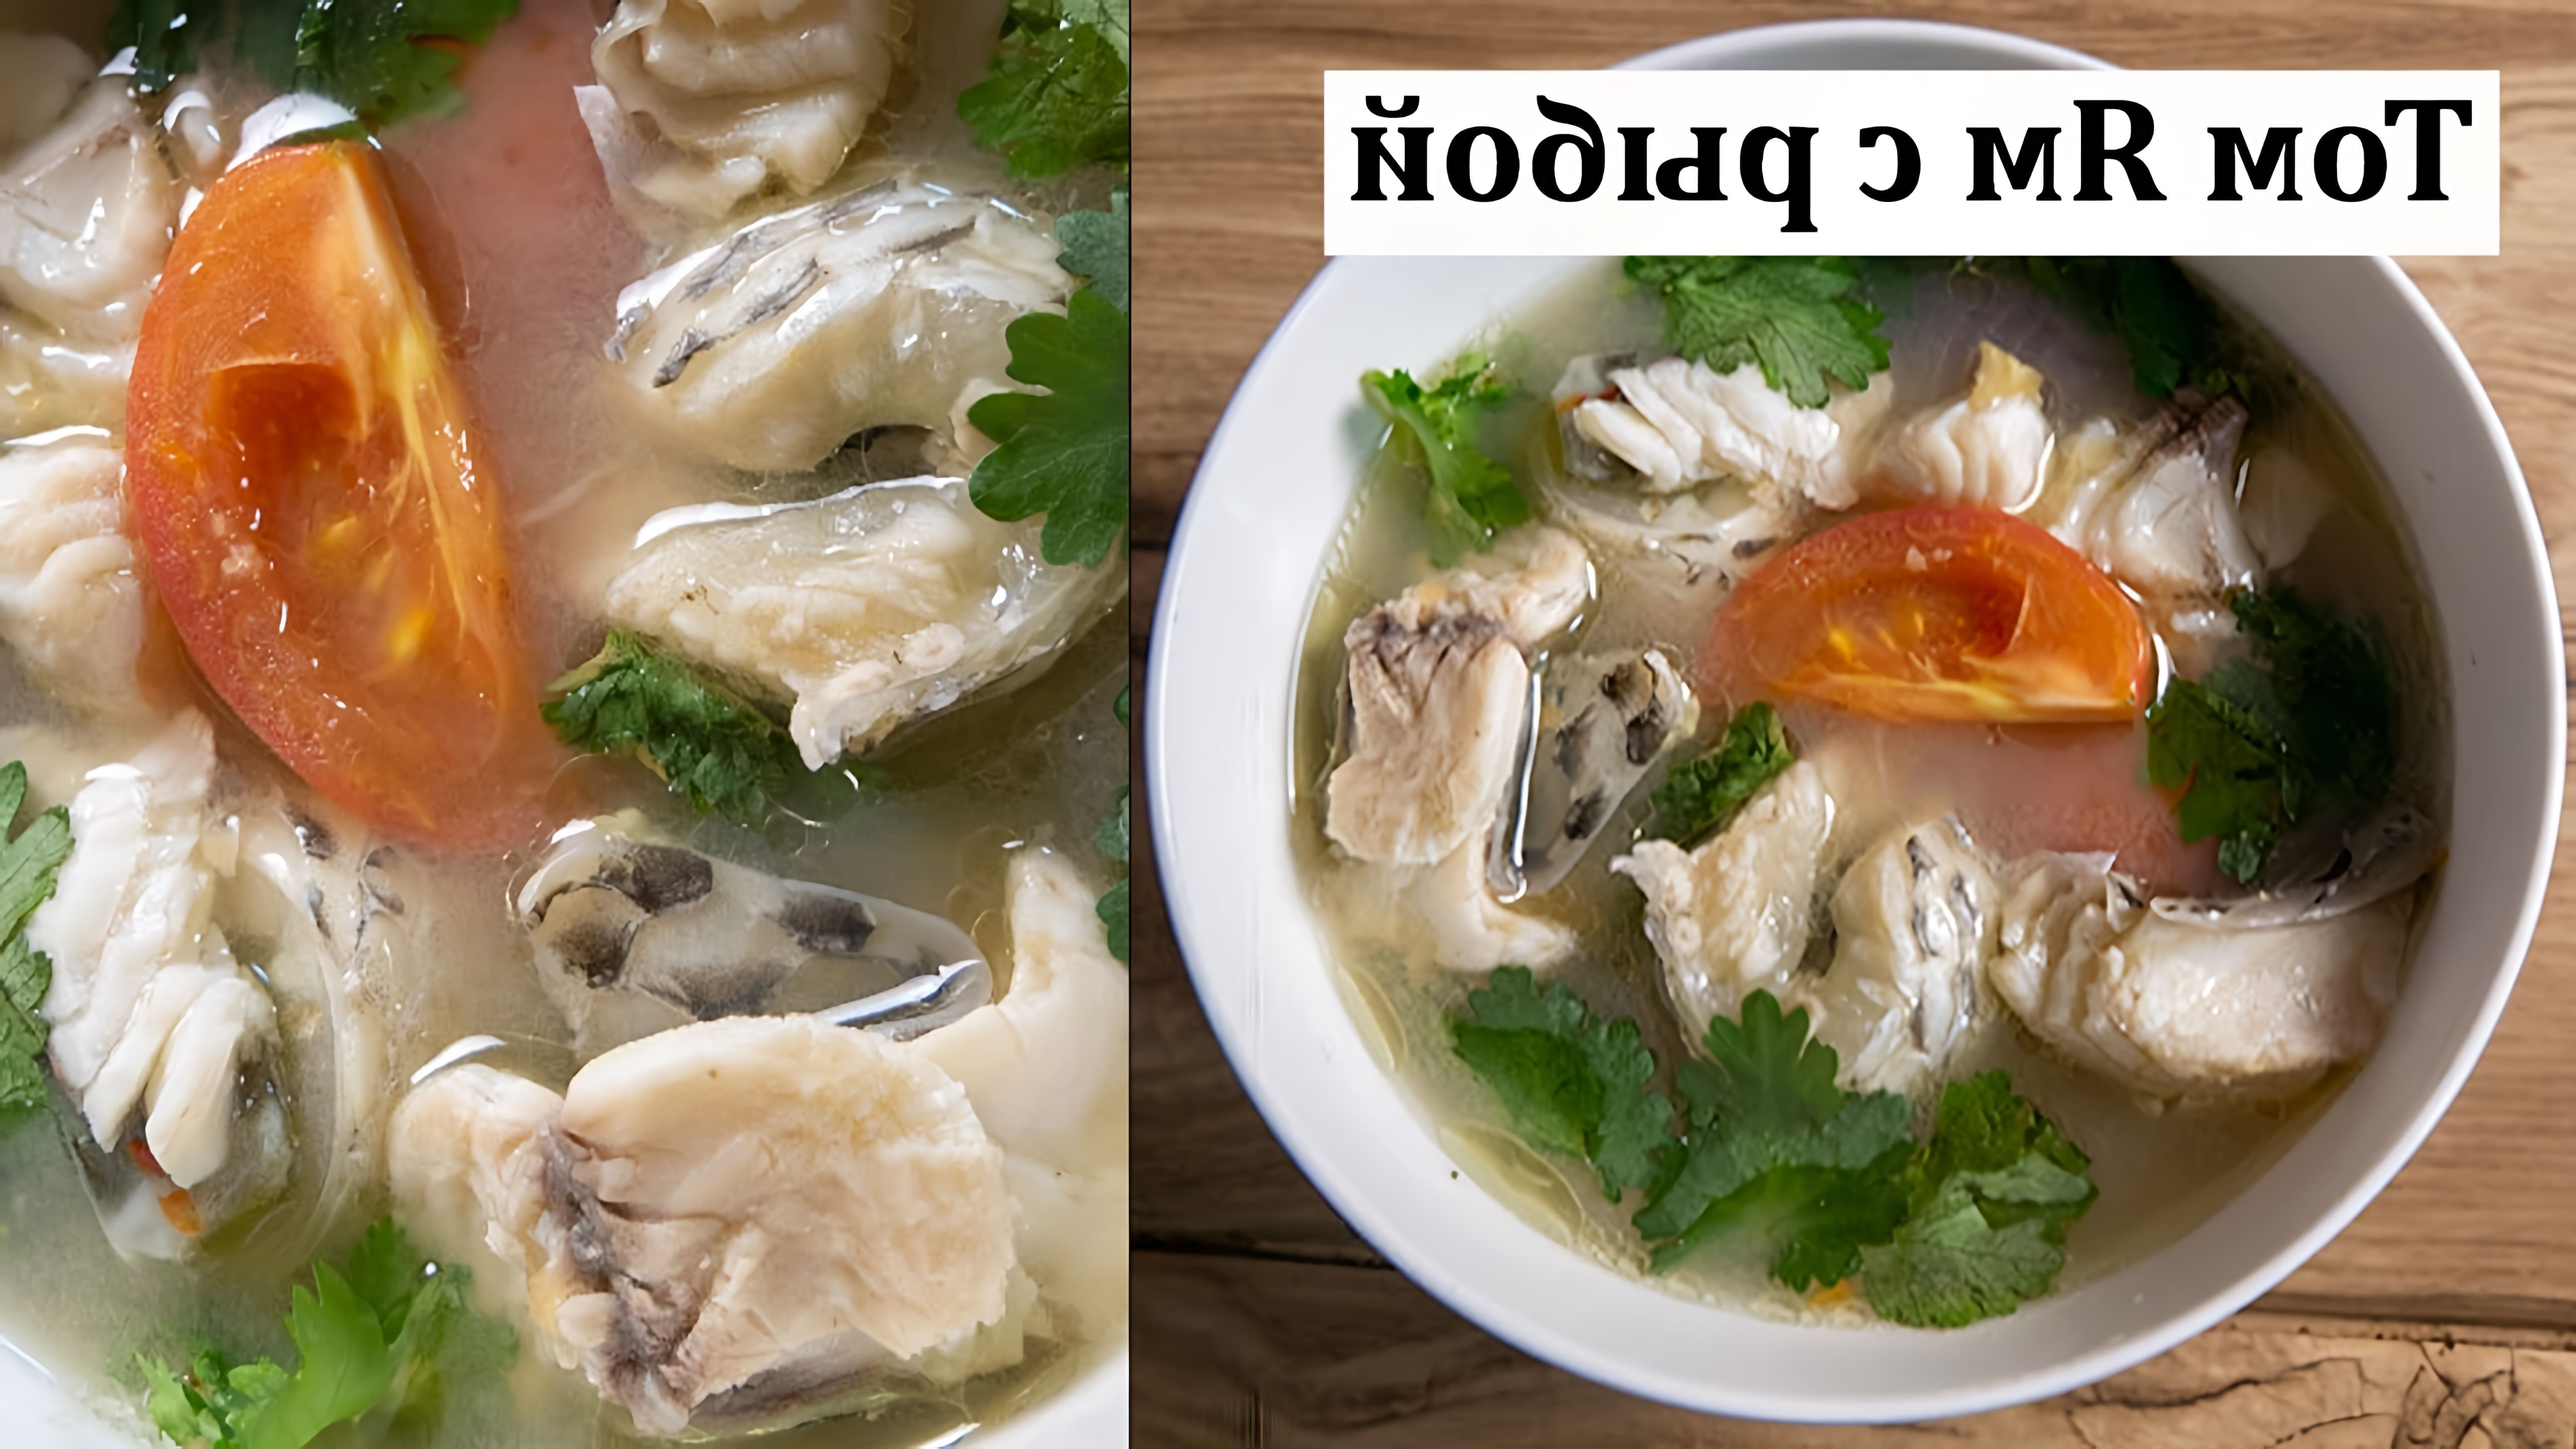 В этом видео демонстрируется рецепт приготовления рыбного том яма, популярного тайского супа